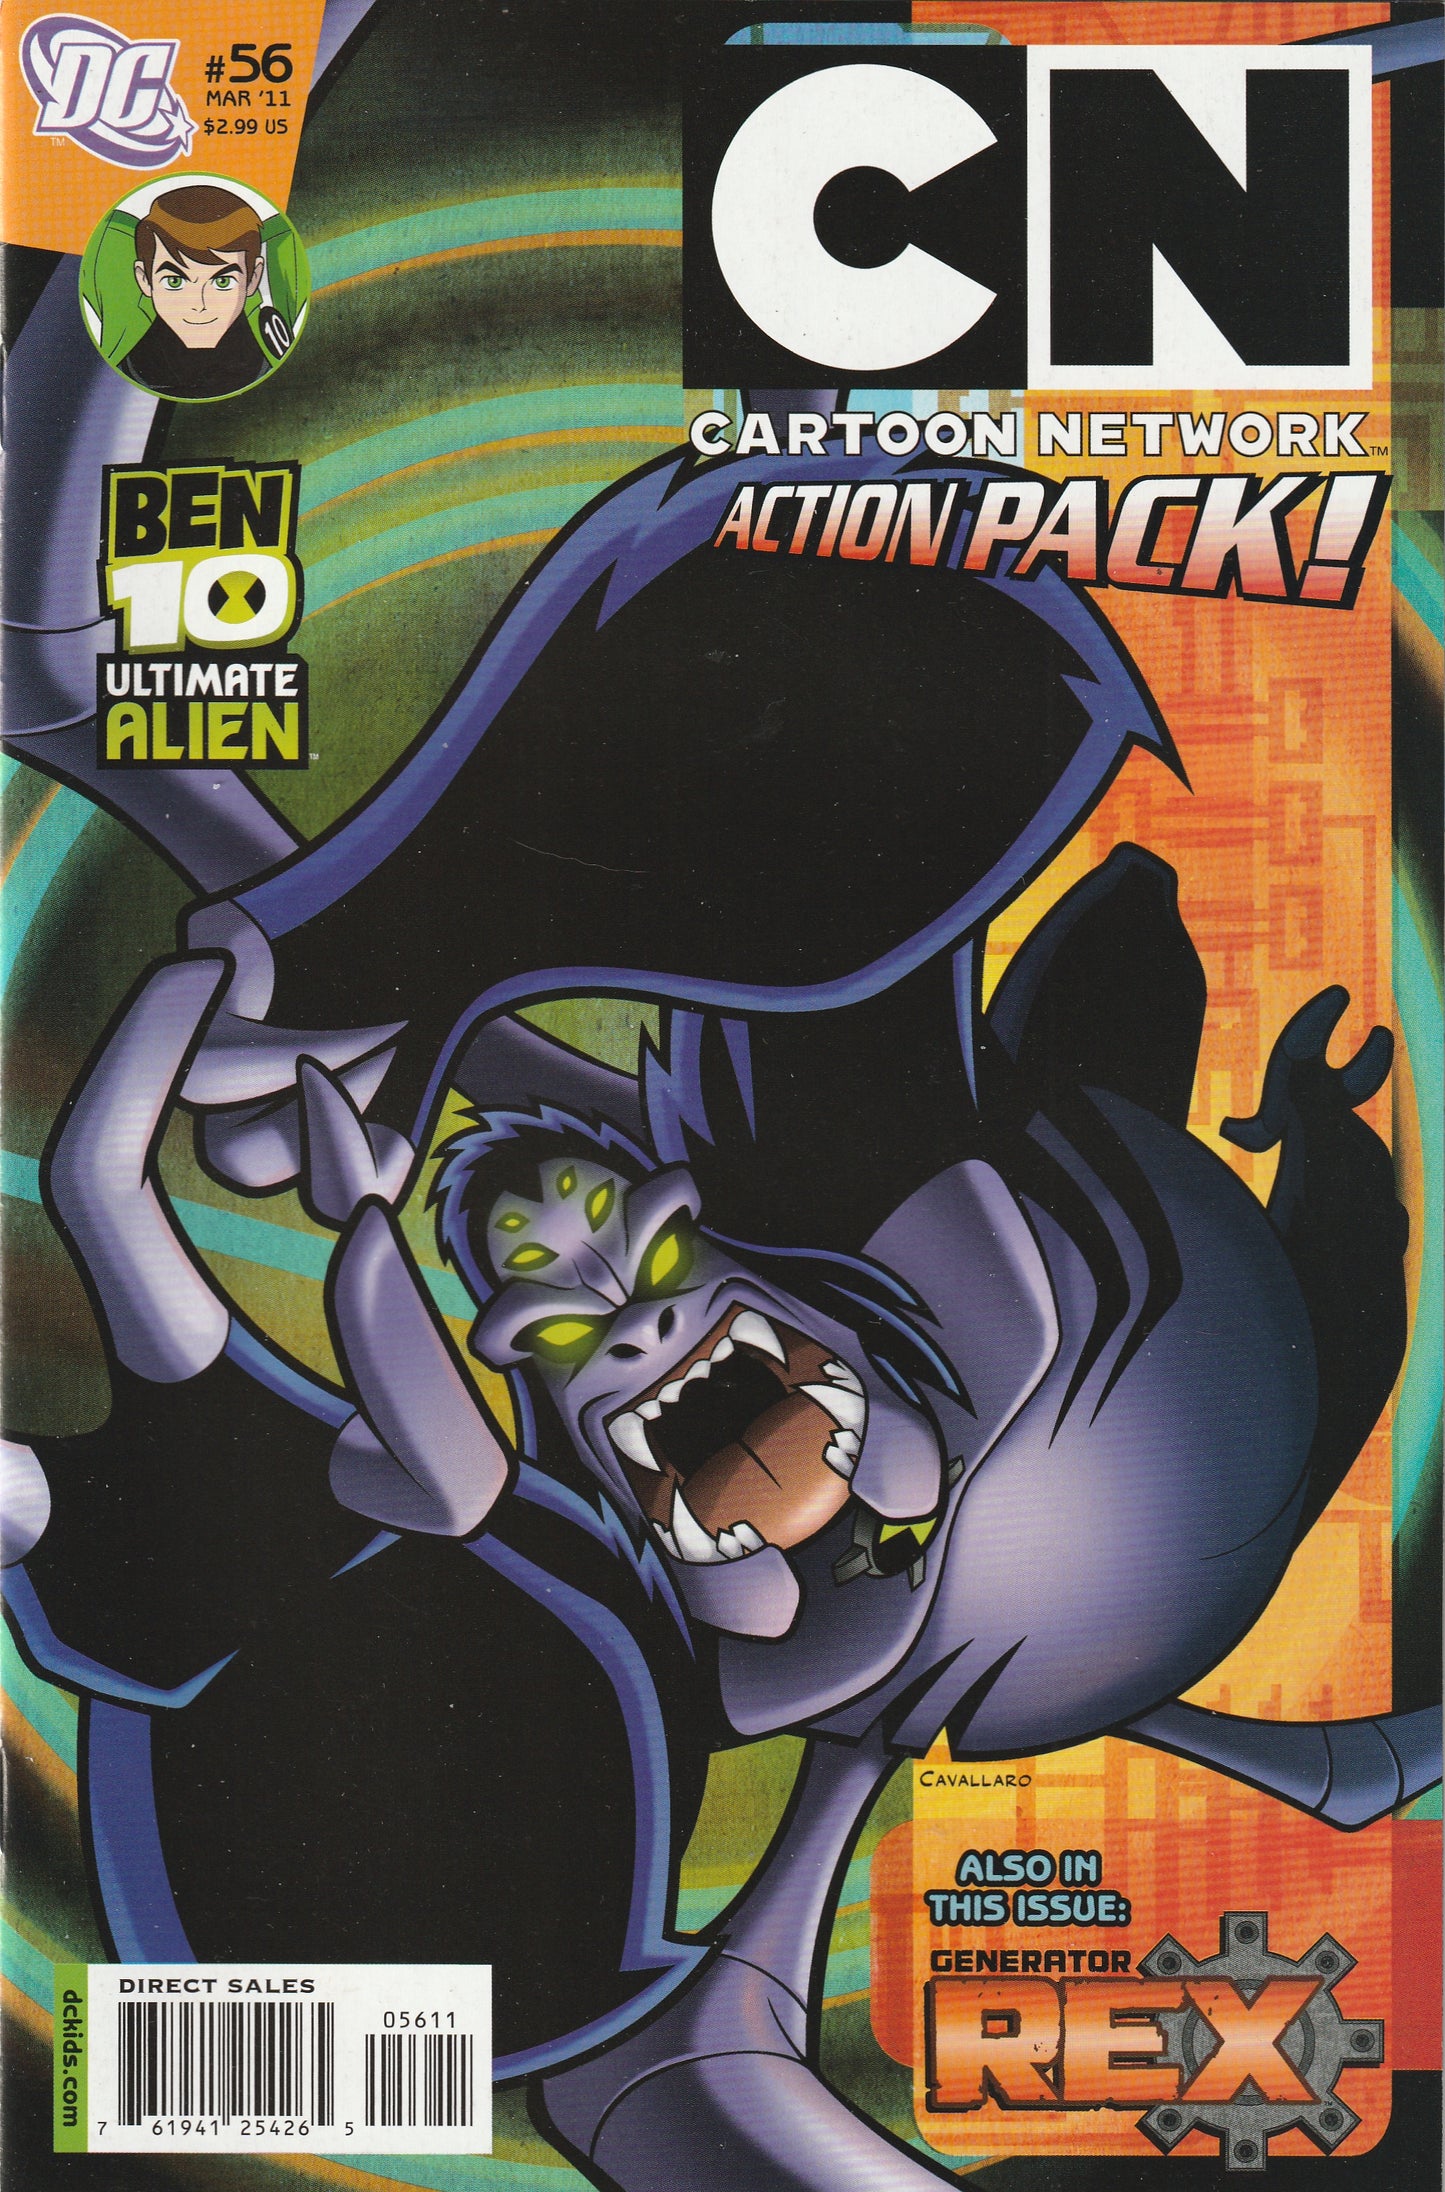 Cartoon Network Action Pack #56 (2011) - Generator Rex, Ben 10 Ultimate Alien